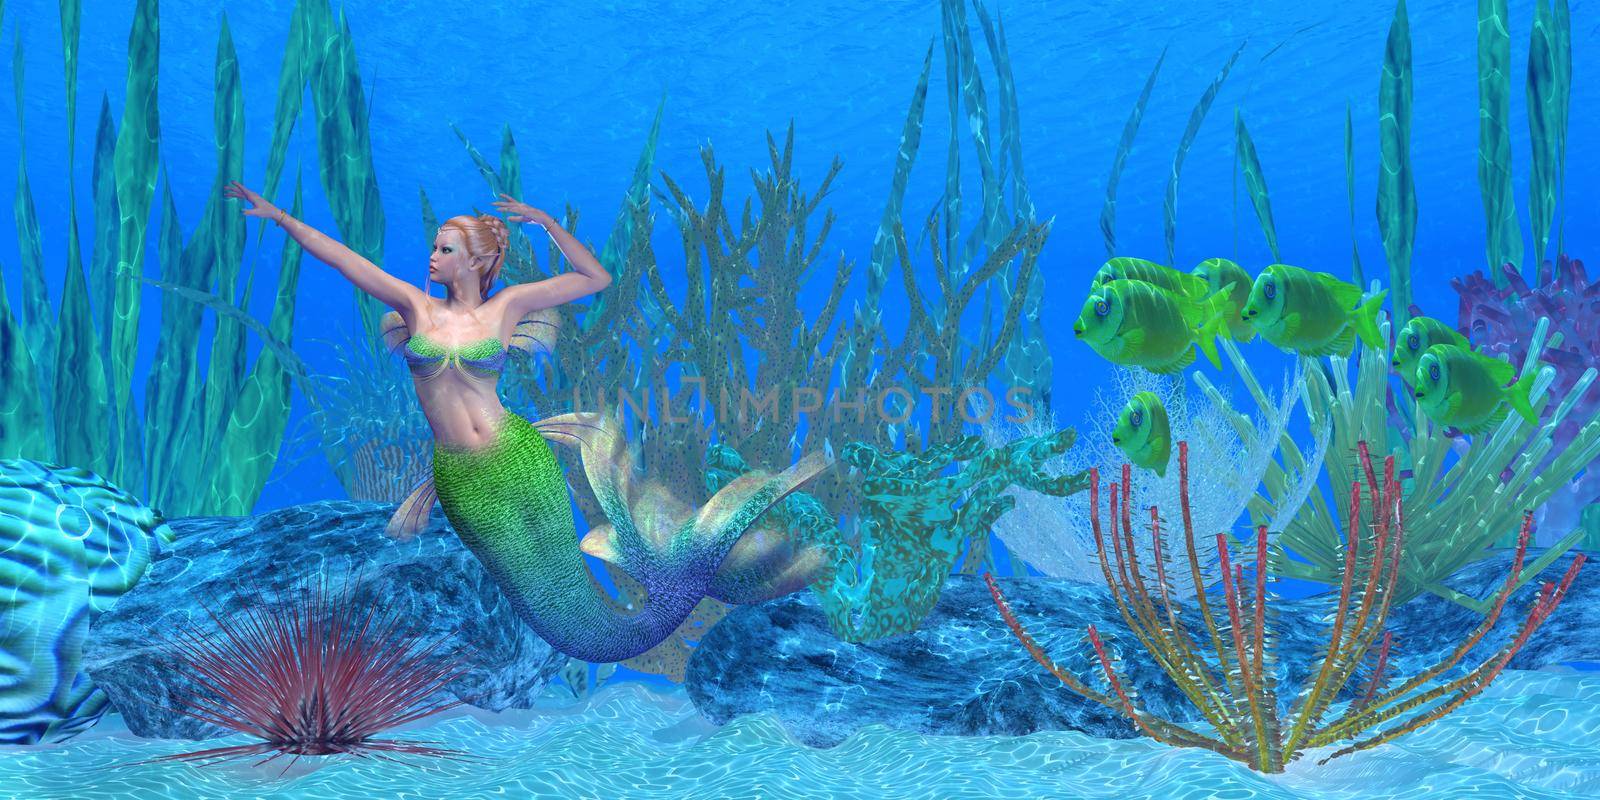 Lagoona Mermaid Underwater by Catmando